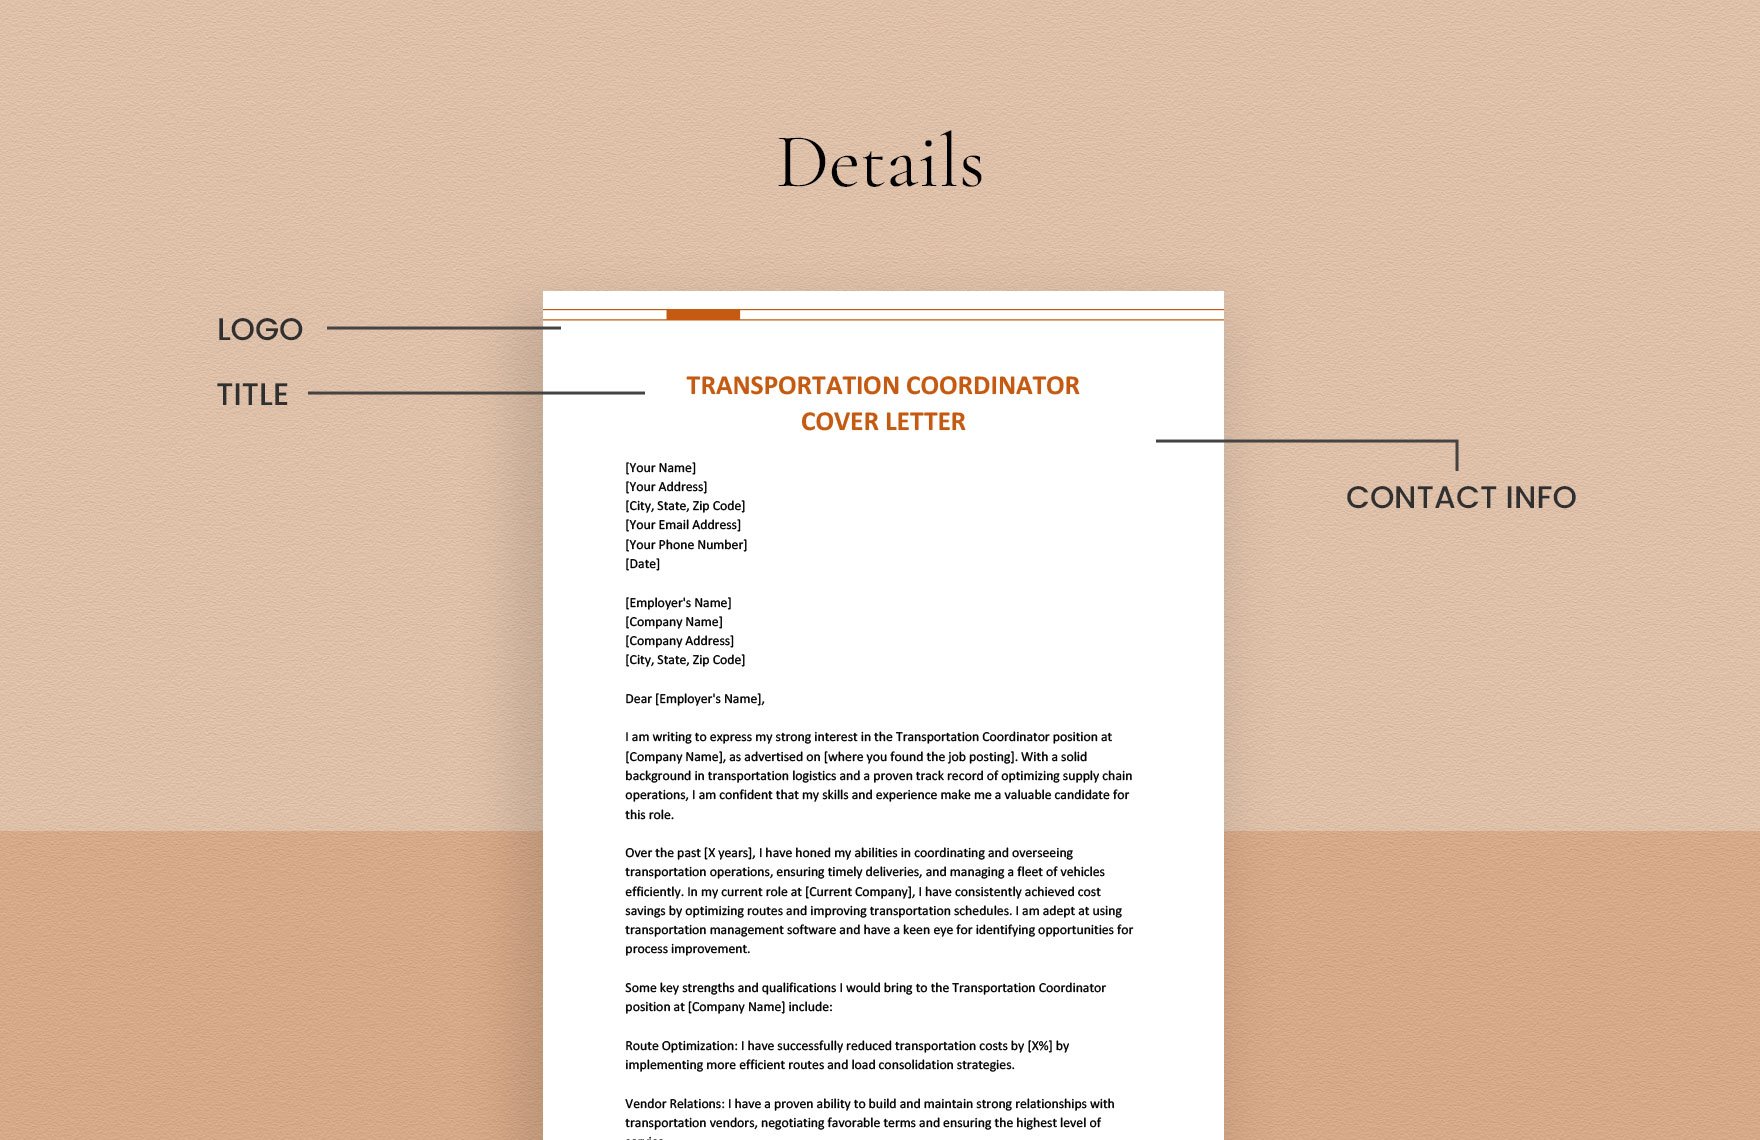 Transportation Coordinator Cover Letter